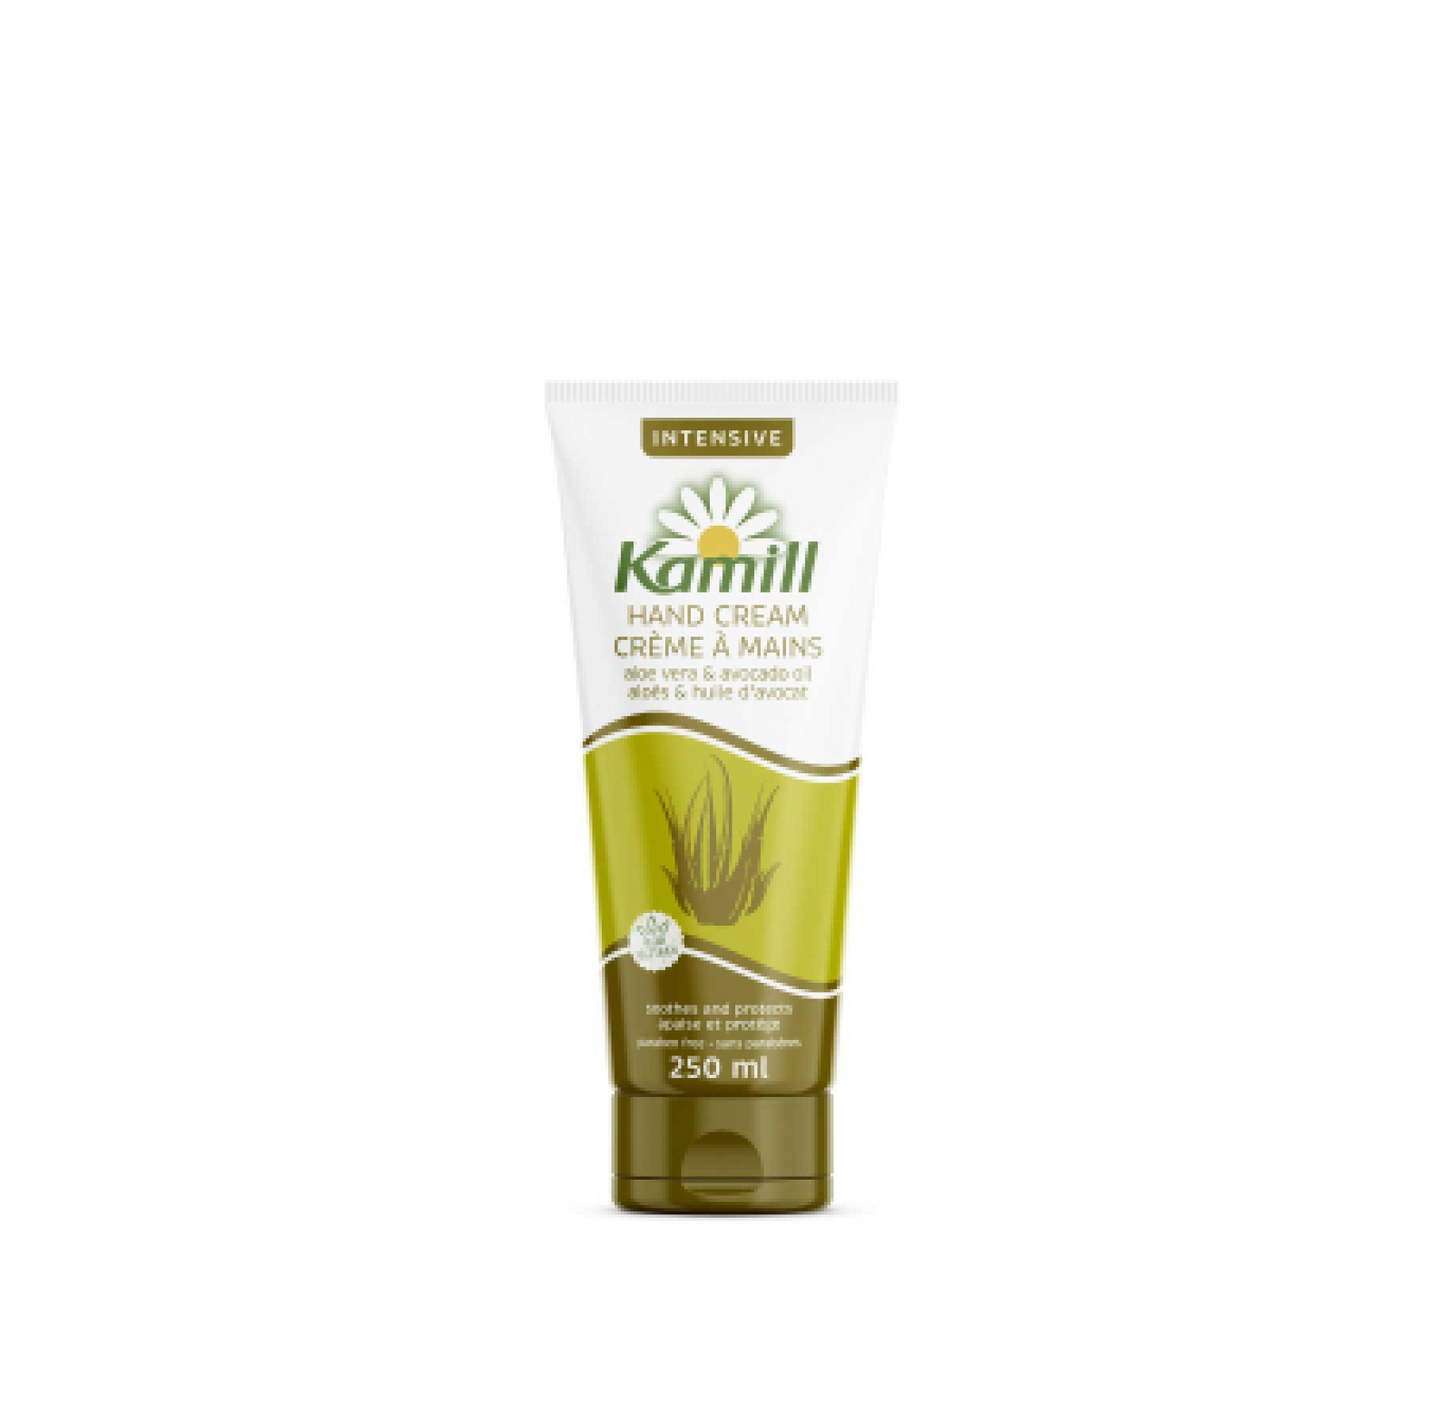 Kamill Intensive Hand Cream Aloe Vera & Avocado Oil 250ml